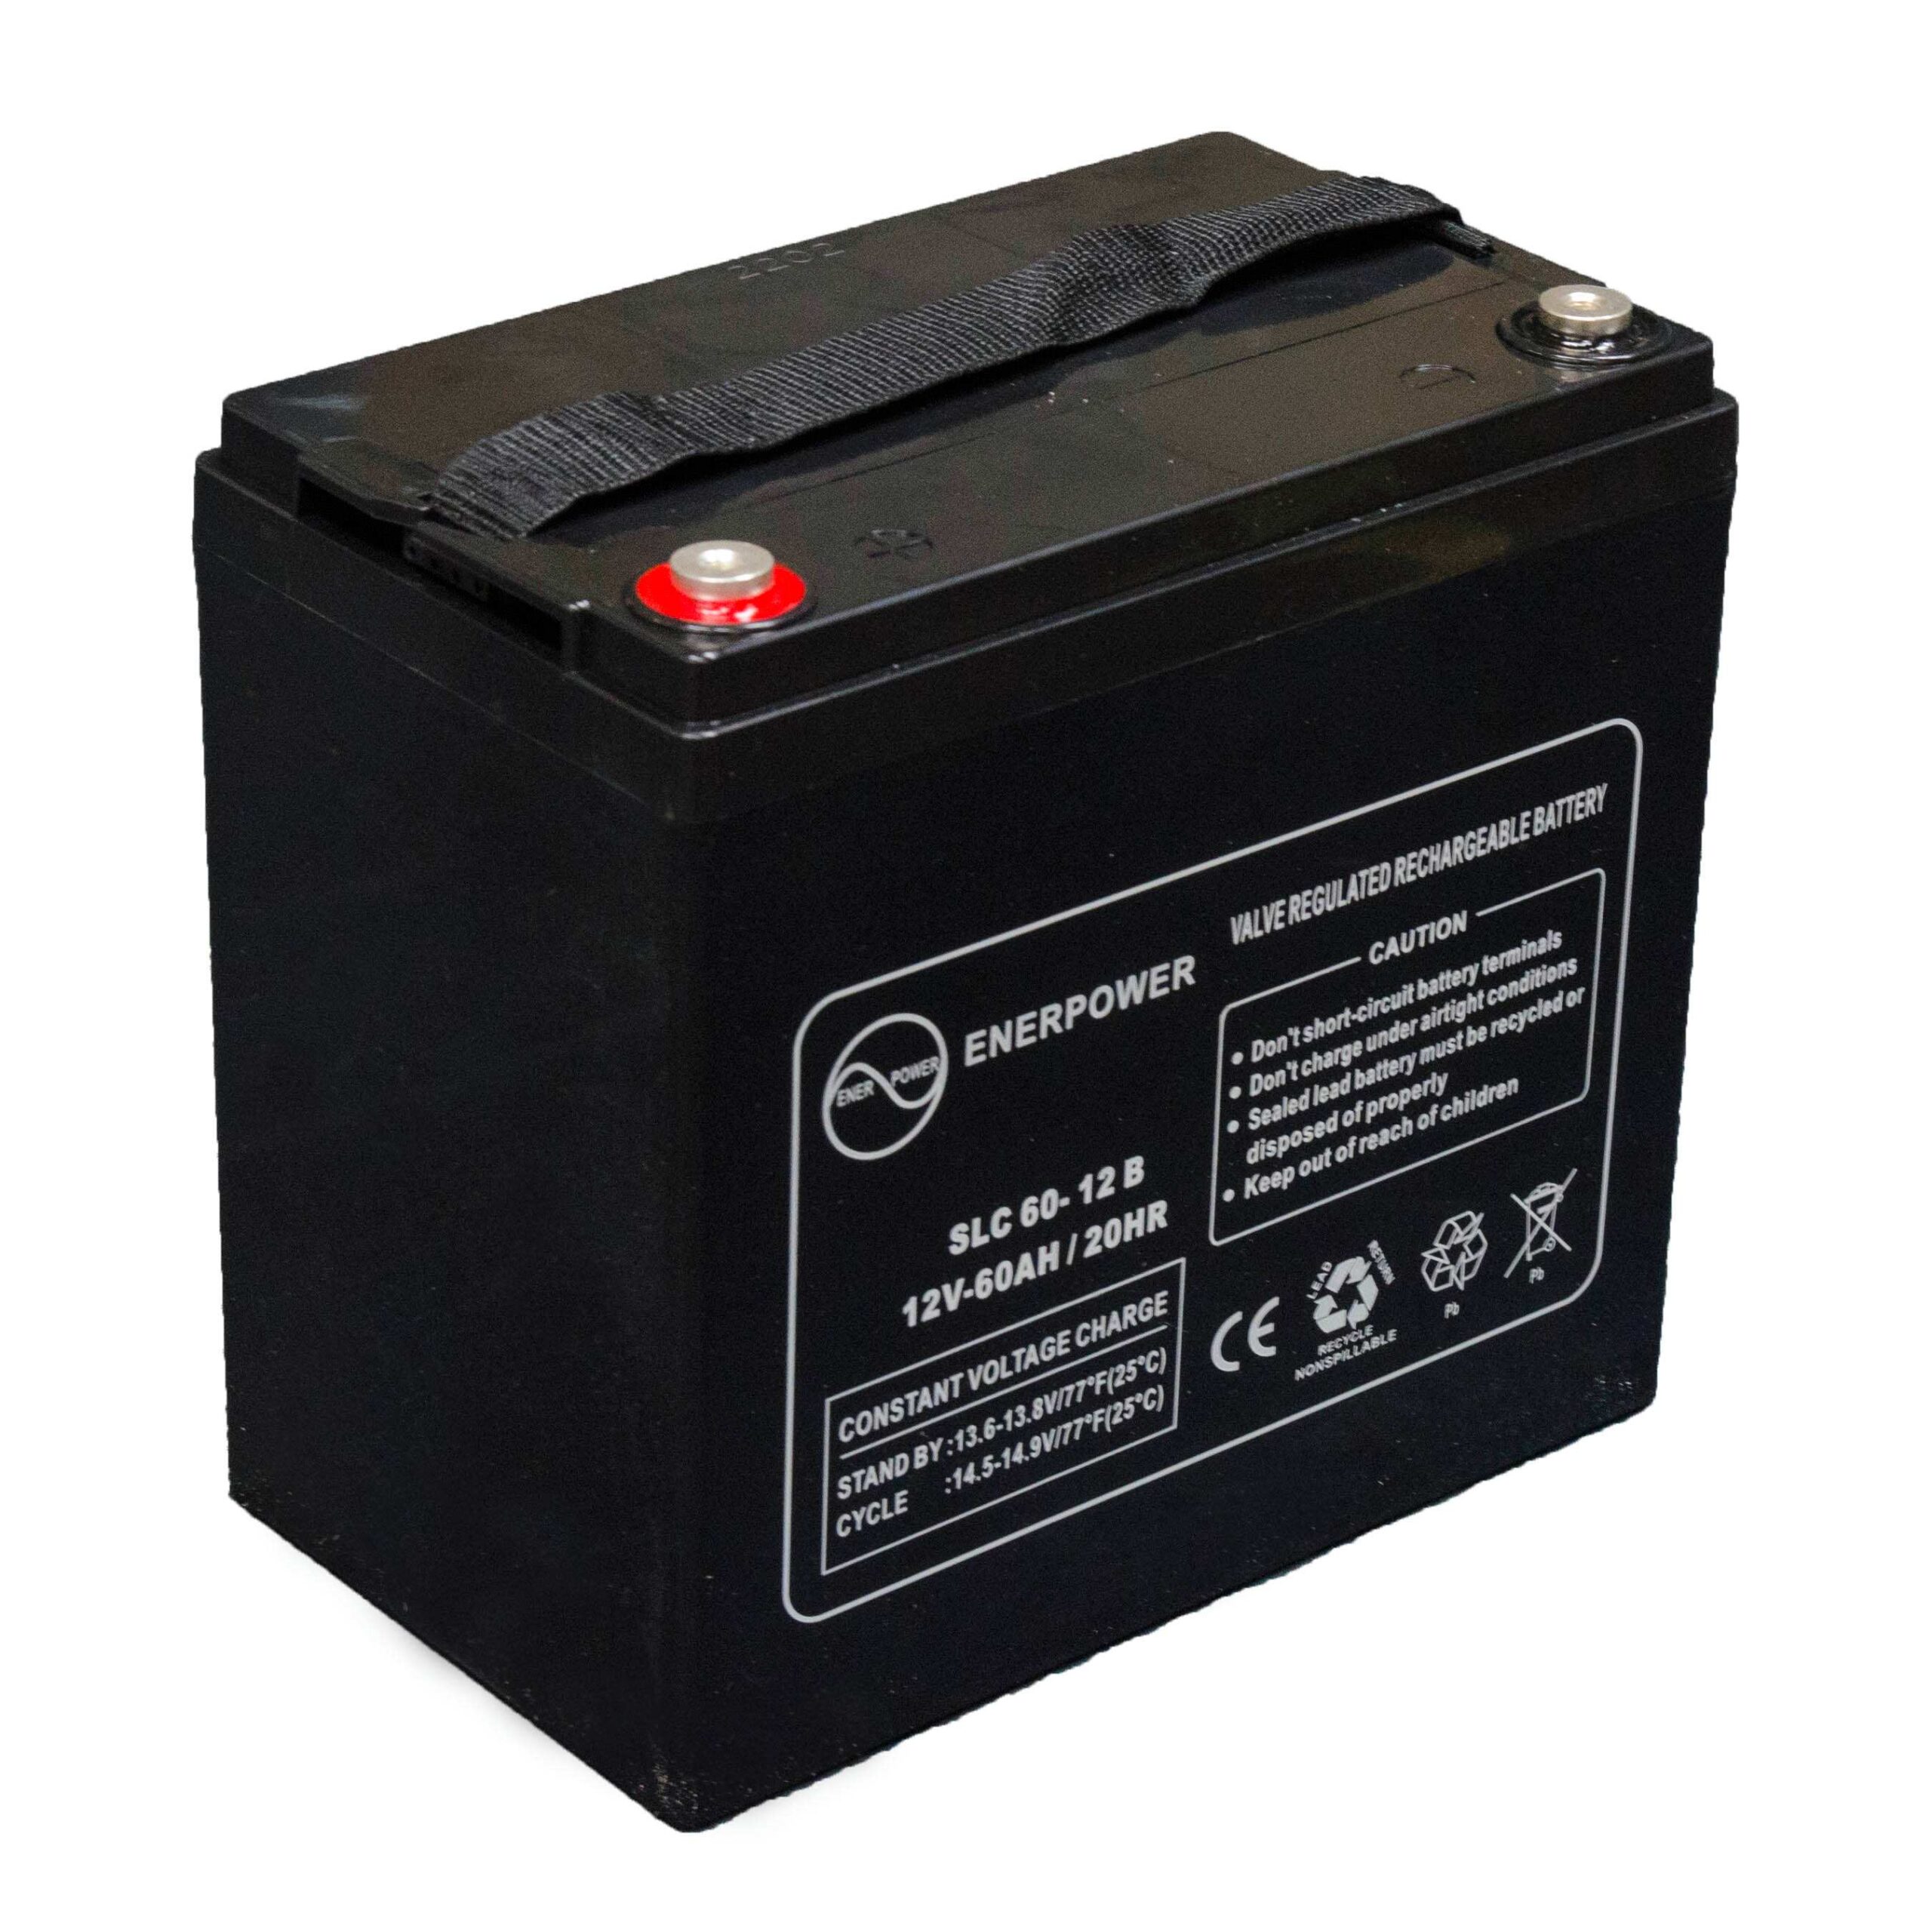 SLC 60-12 12V 60Ah AGM ENERPOWER Batterie